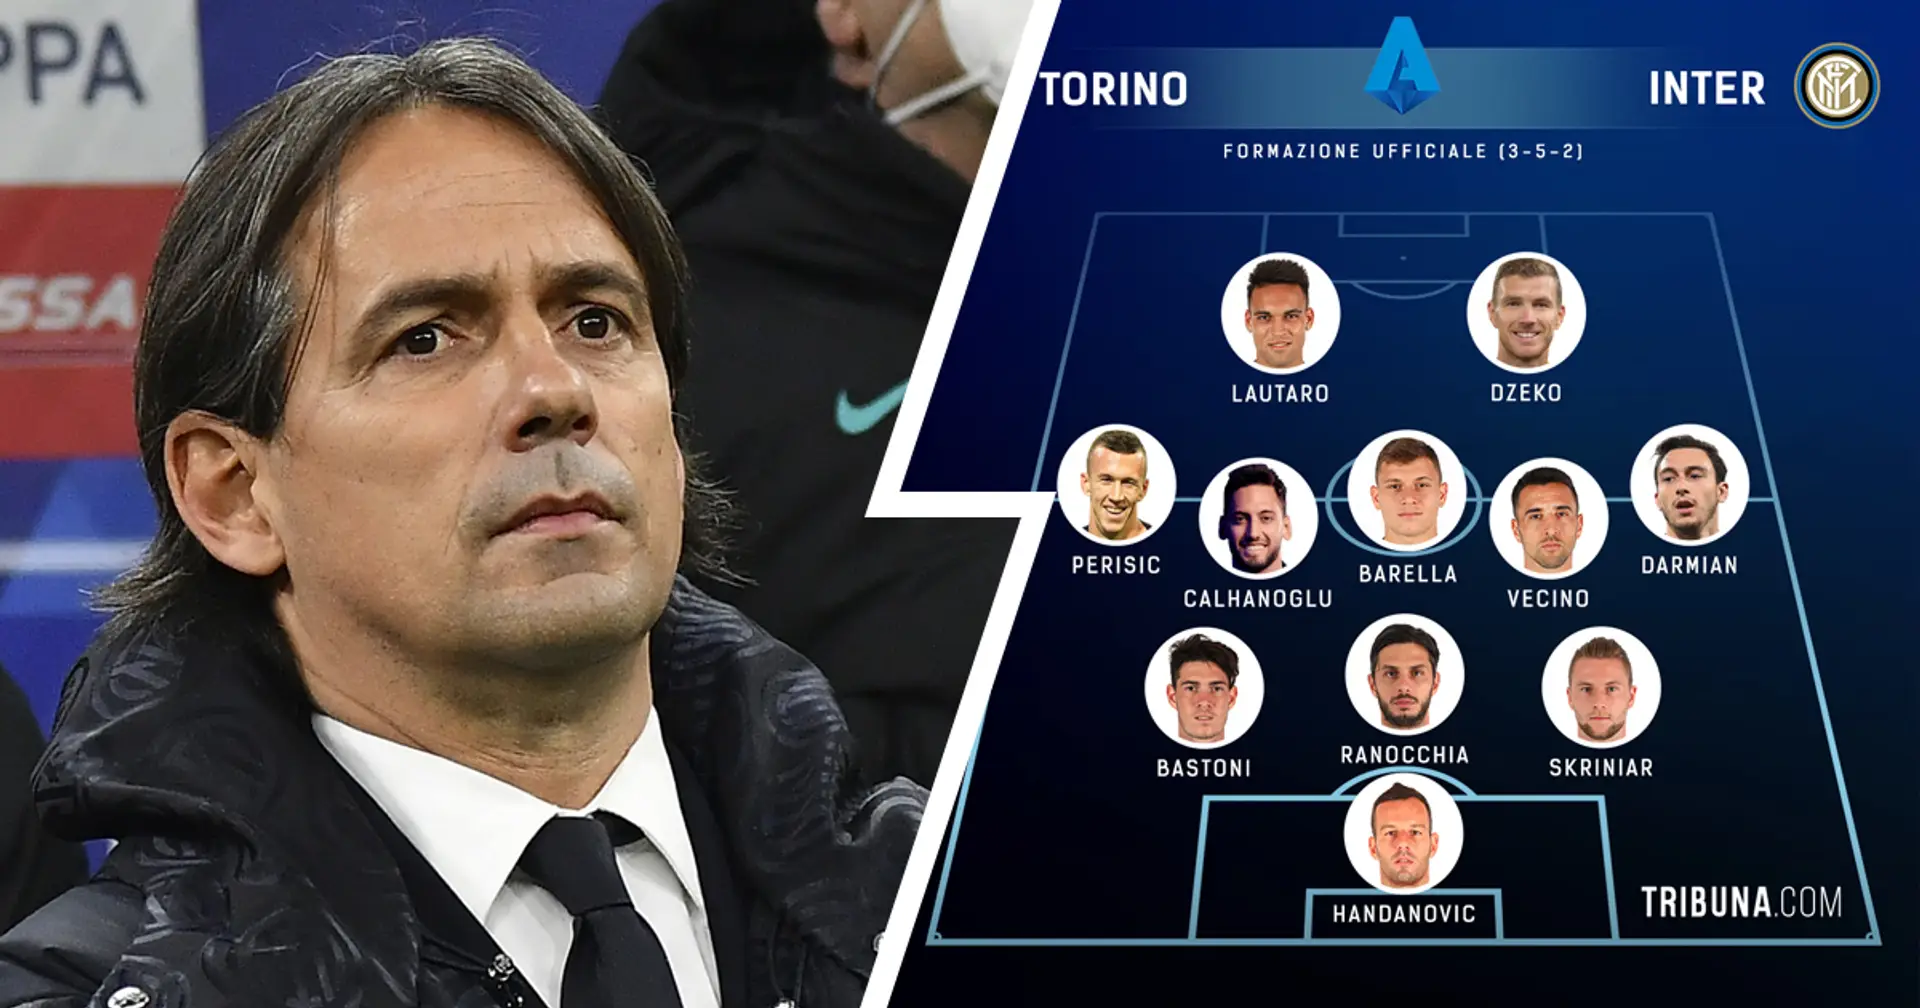 UFFICIALE| La formazione scelta da Inzaghi per la sfida con il Torino: Vecino e Ranocchia dal 1', c'è Lautaro